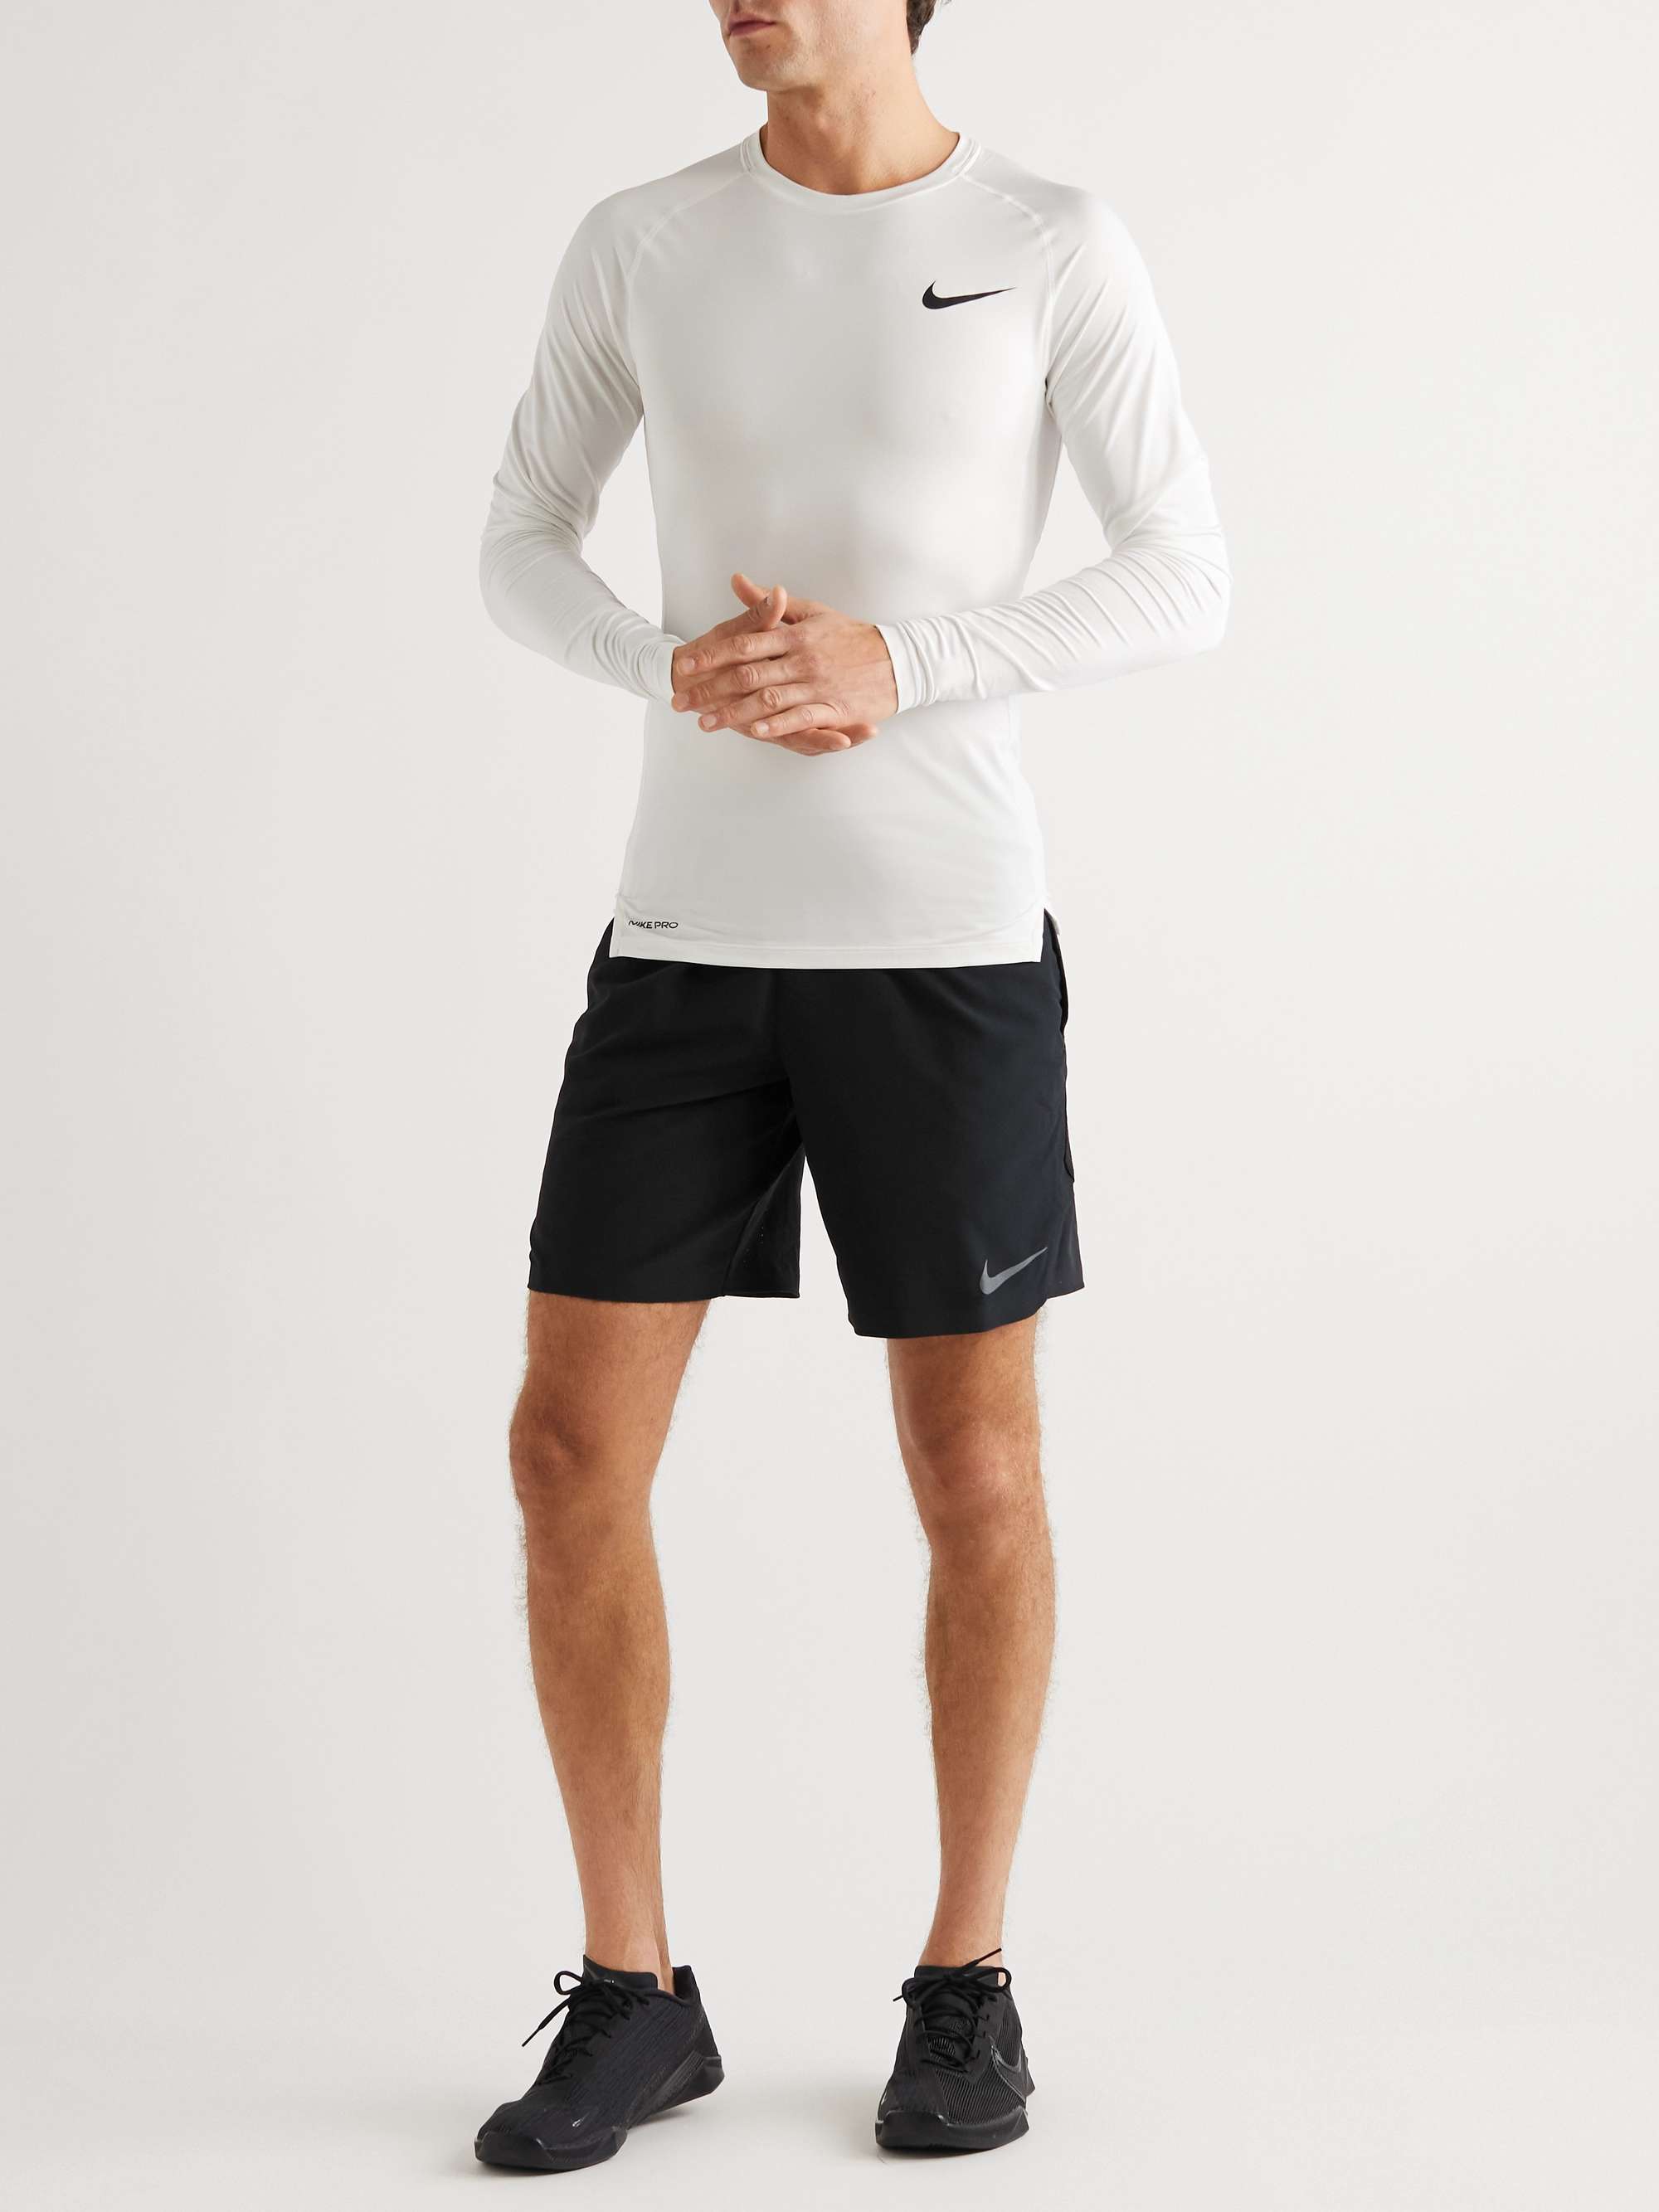 NIKE TRAINING Pro Flex Rep 3.0 Dri-FIT Shorts for Men